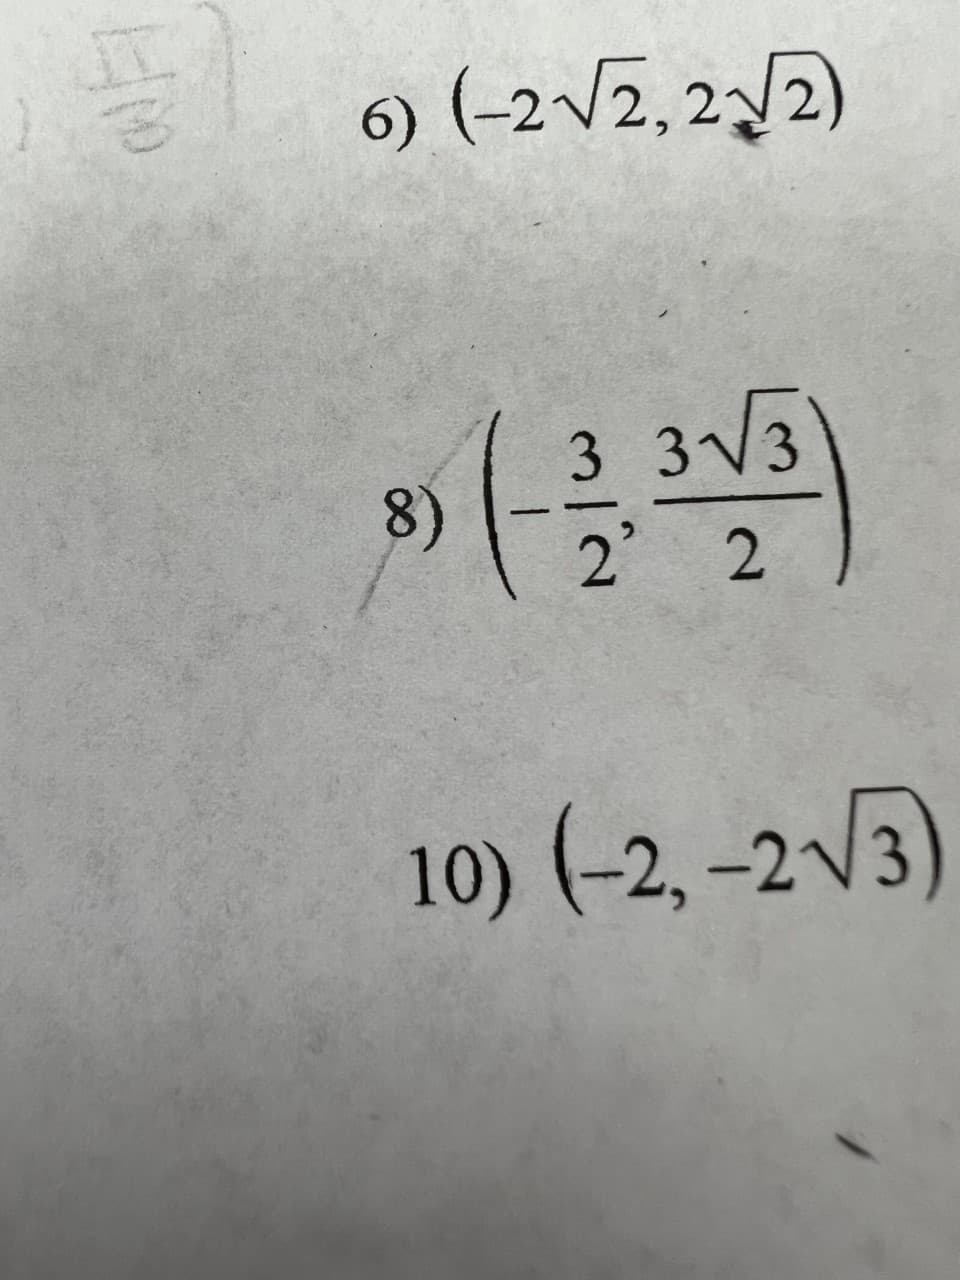 풀
6) (-2√√2,2√√2)
8)
3 3√3
2' 2
10) (-2,-2√3)